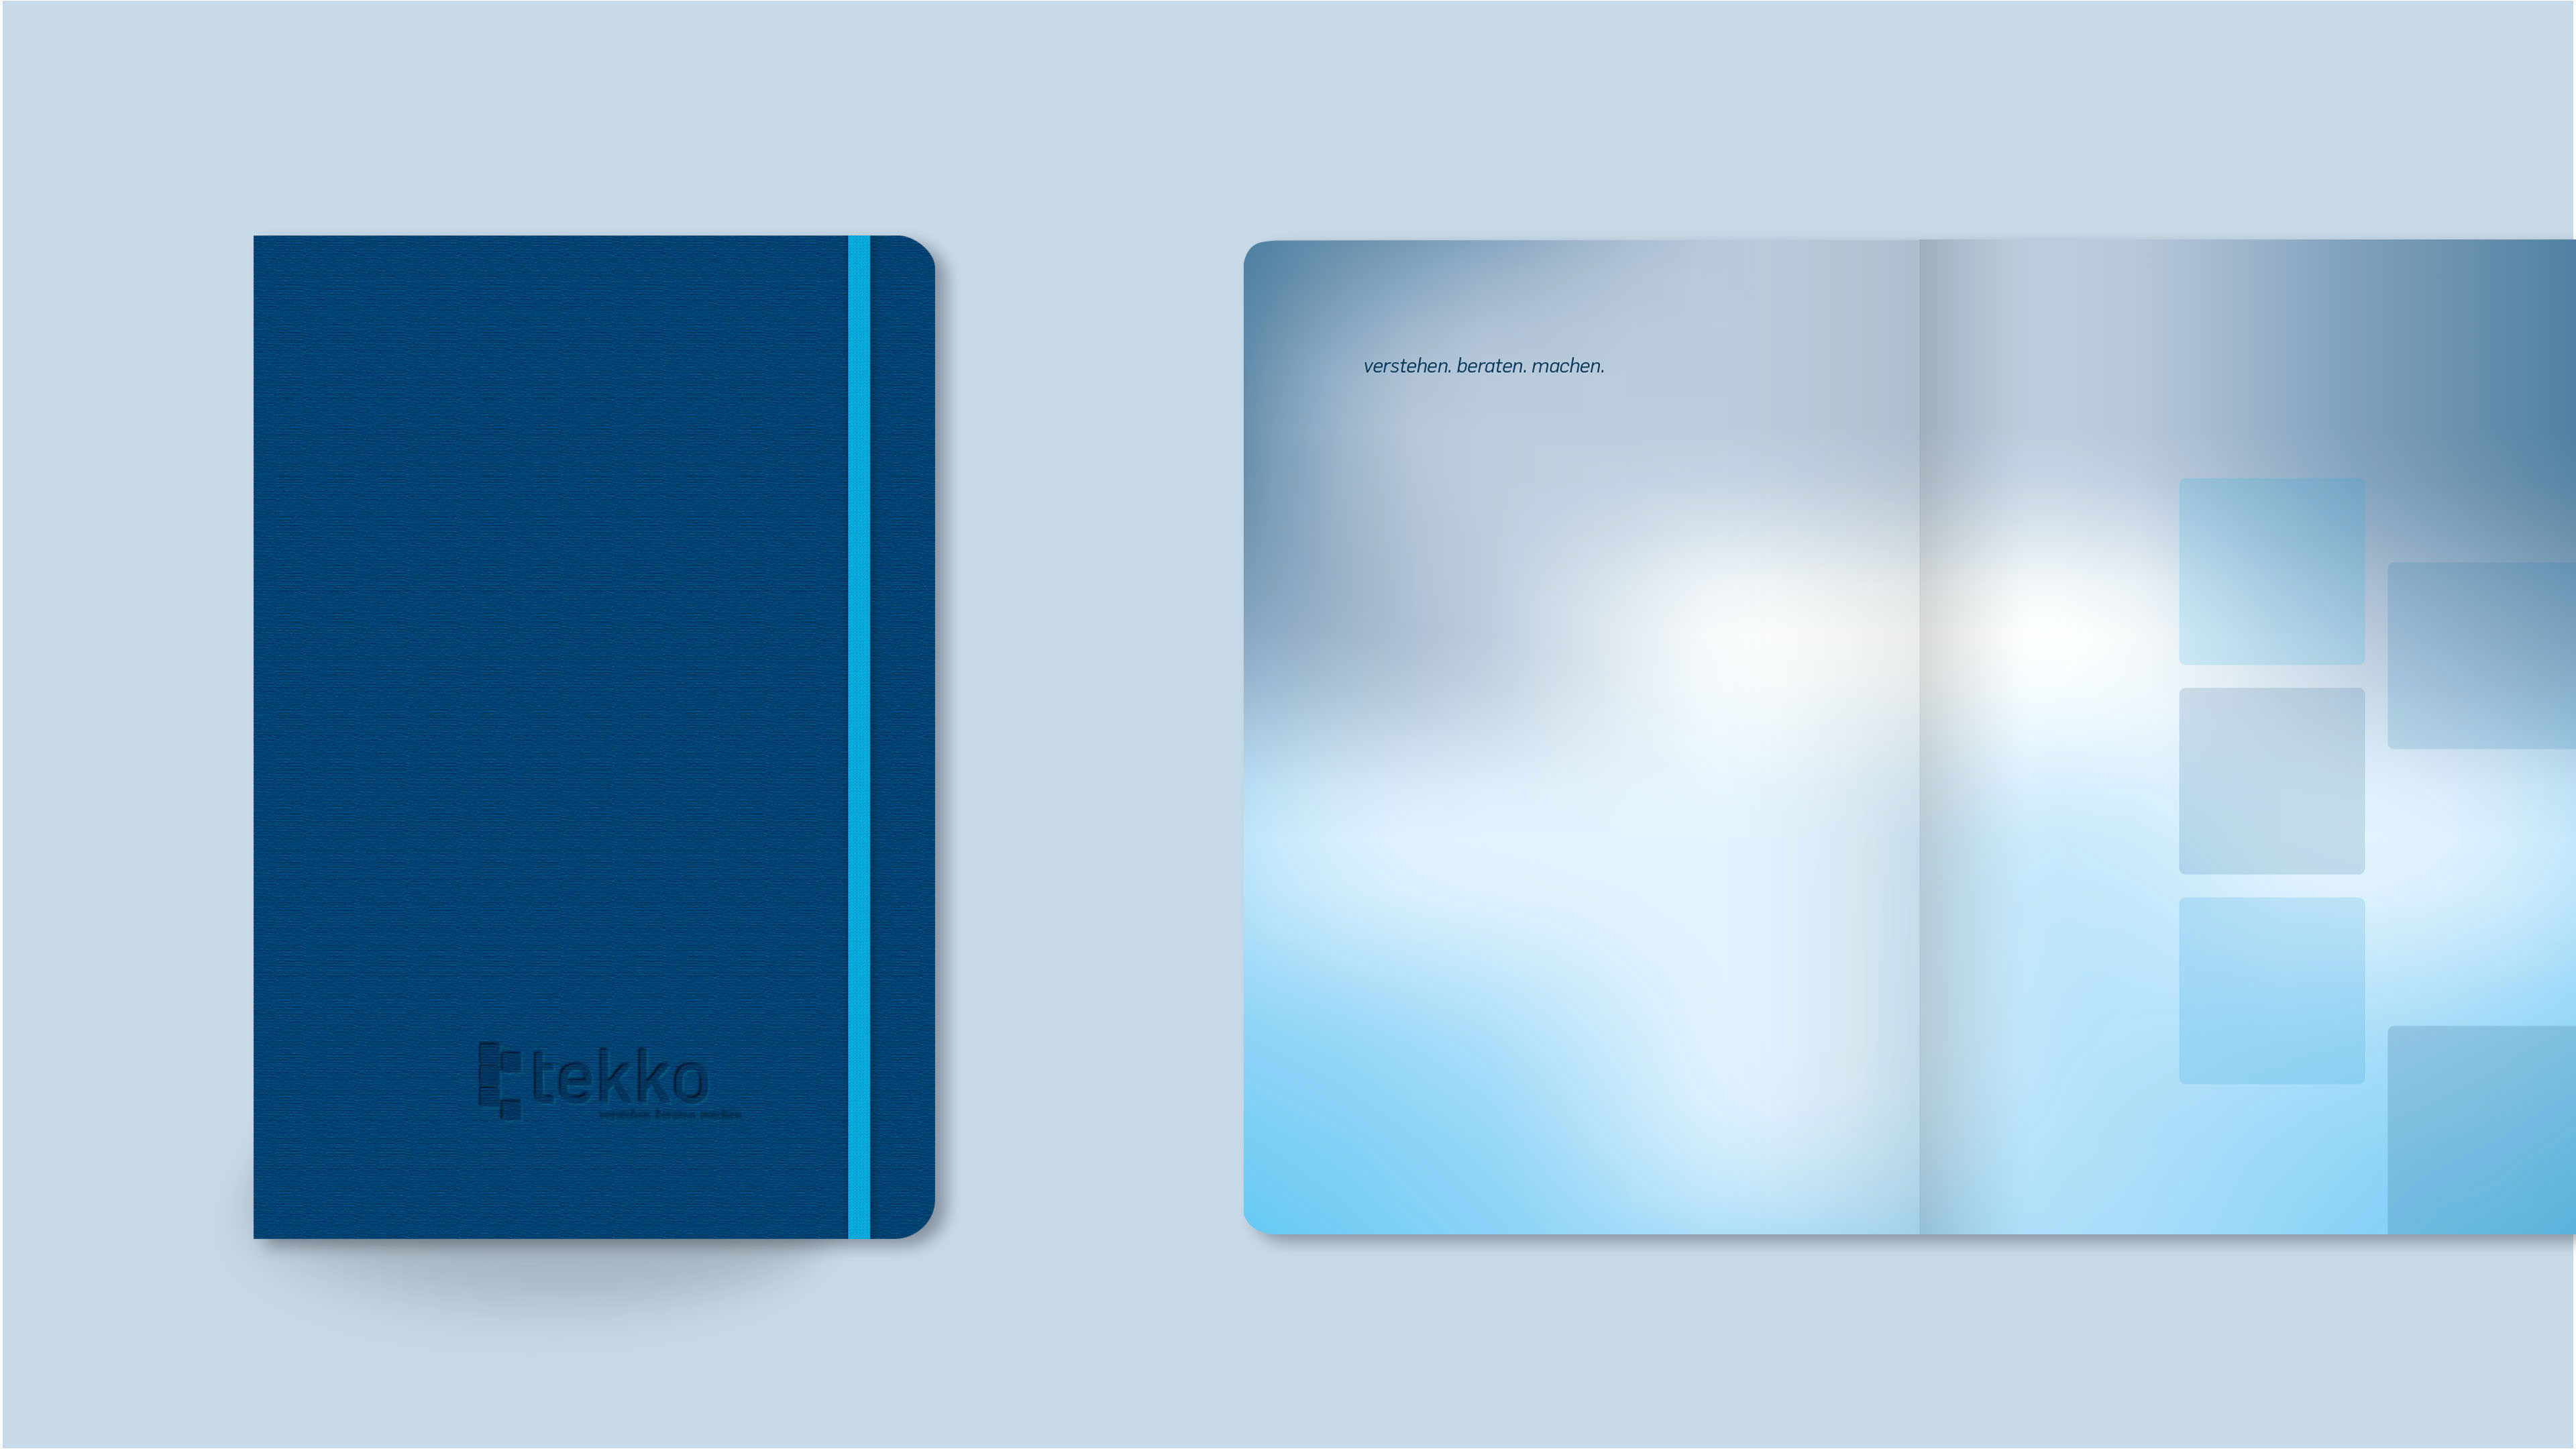 Ein blaues Notizbuch von Tekko